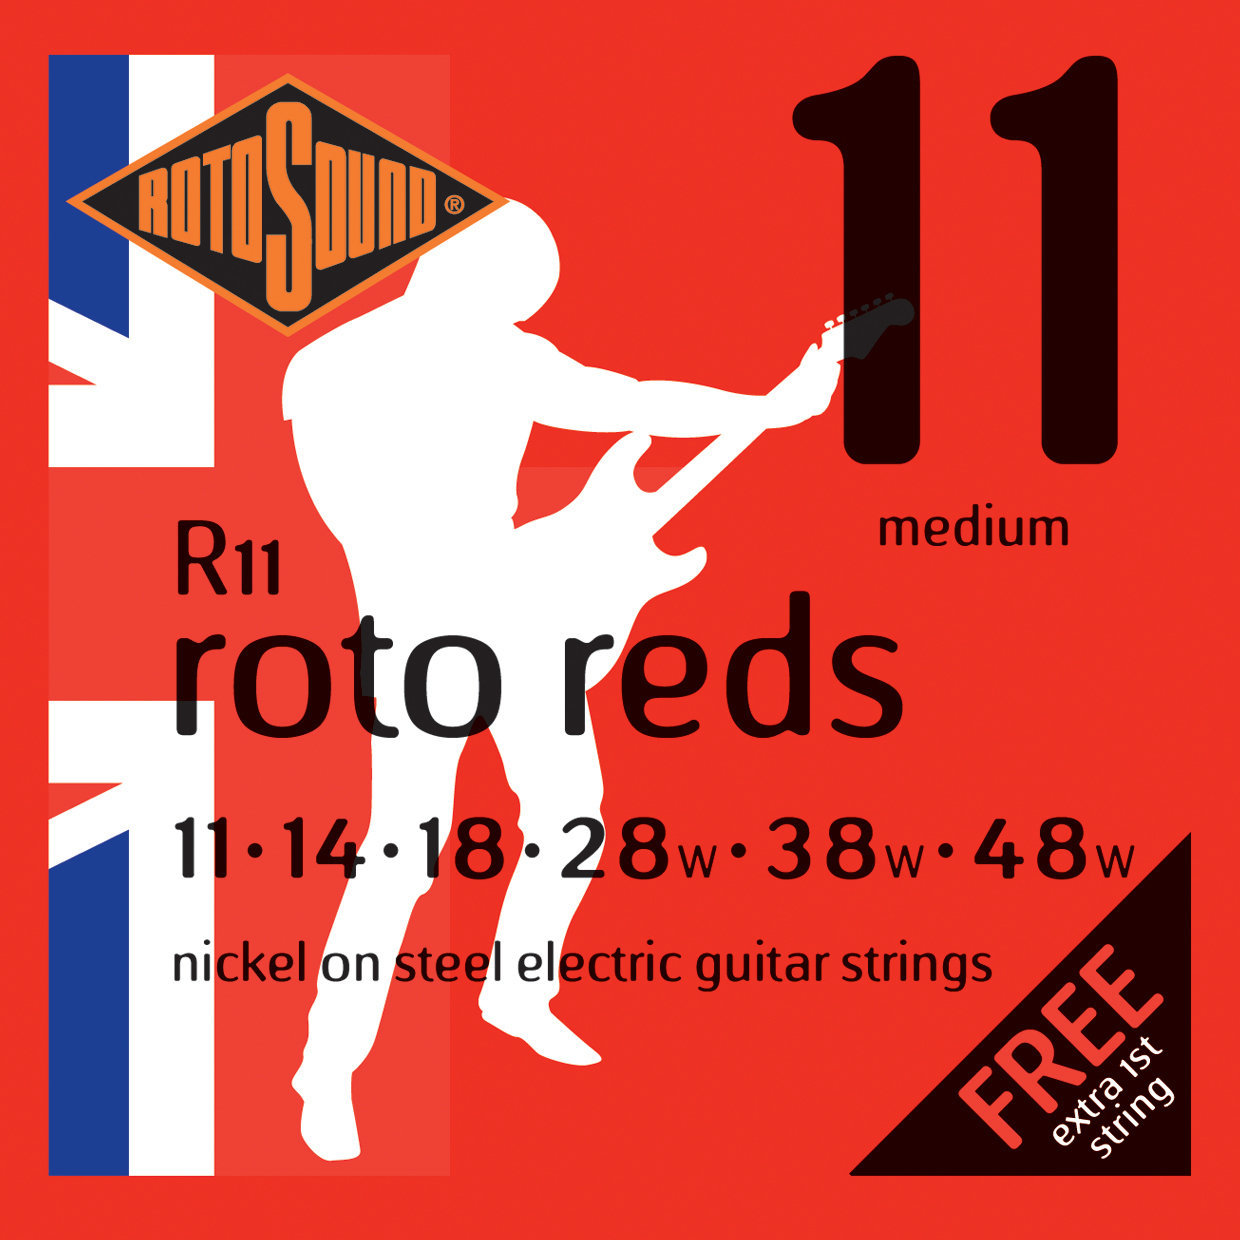 Struny pro elektrickou kytaru Rotosound R11